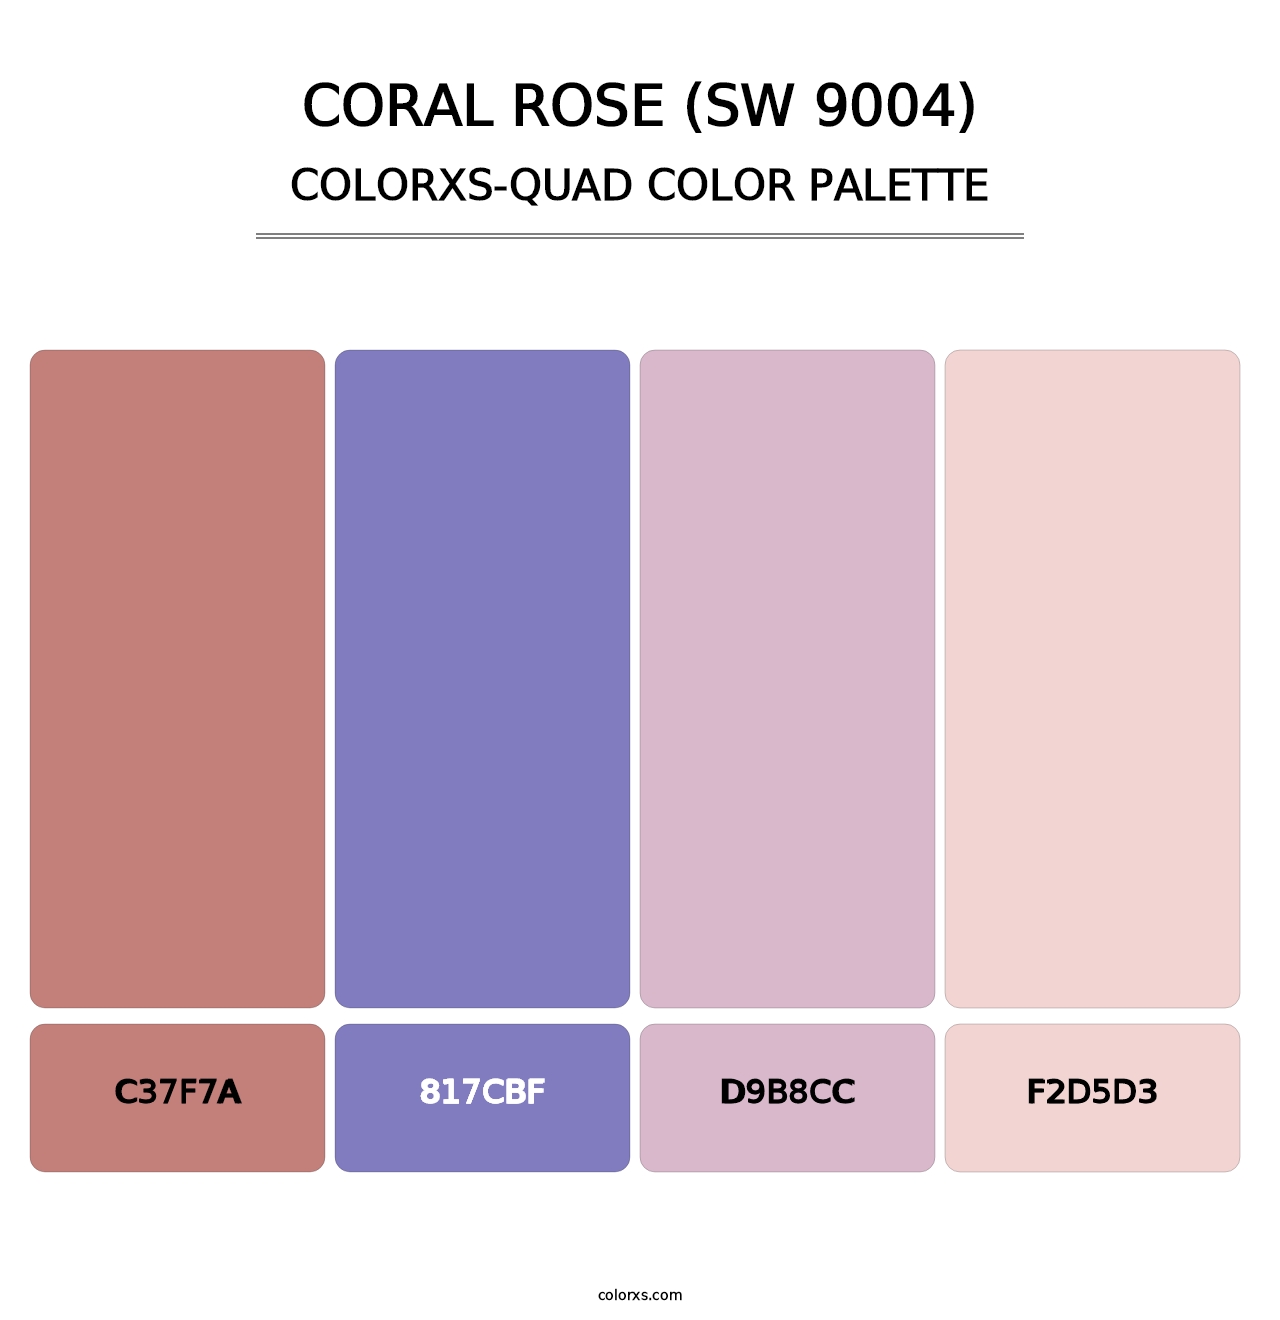 Coral Rose (SW 9004) - Colorxs Quad Palette